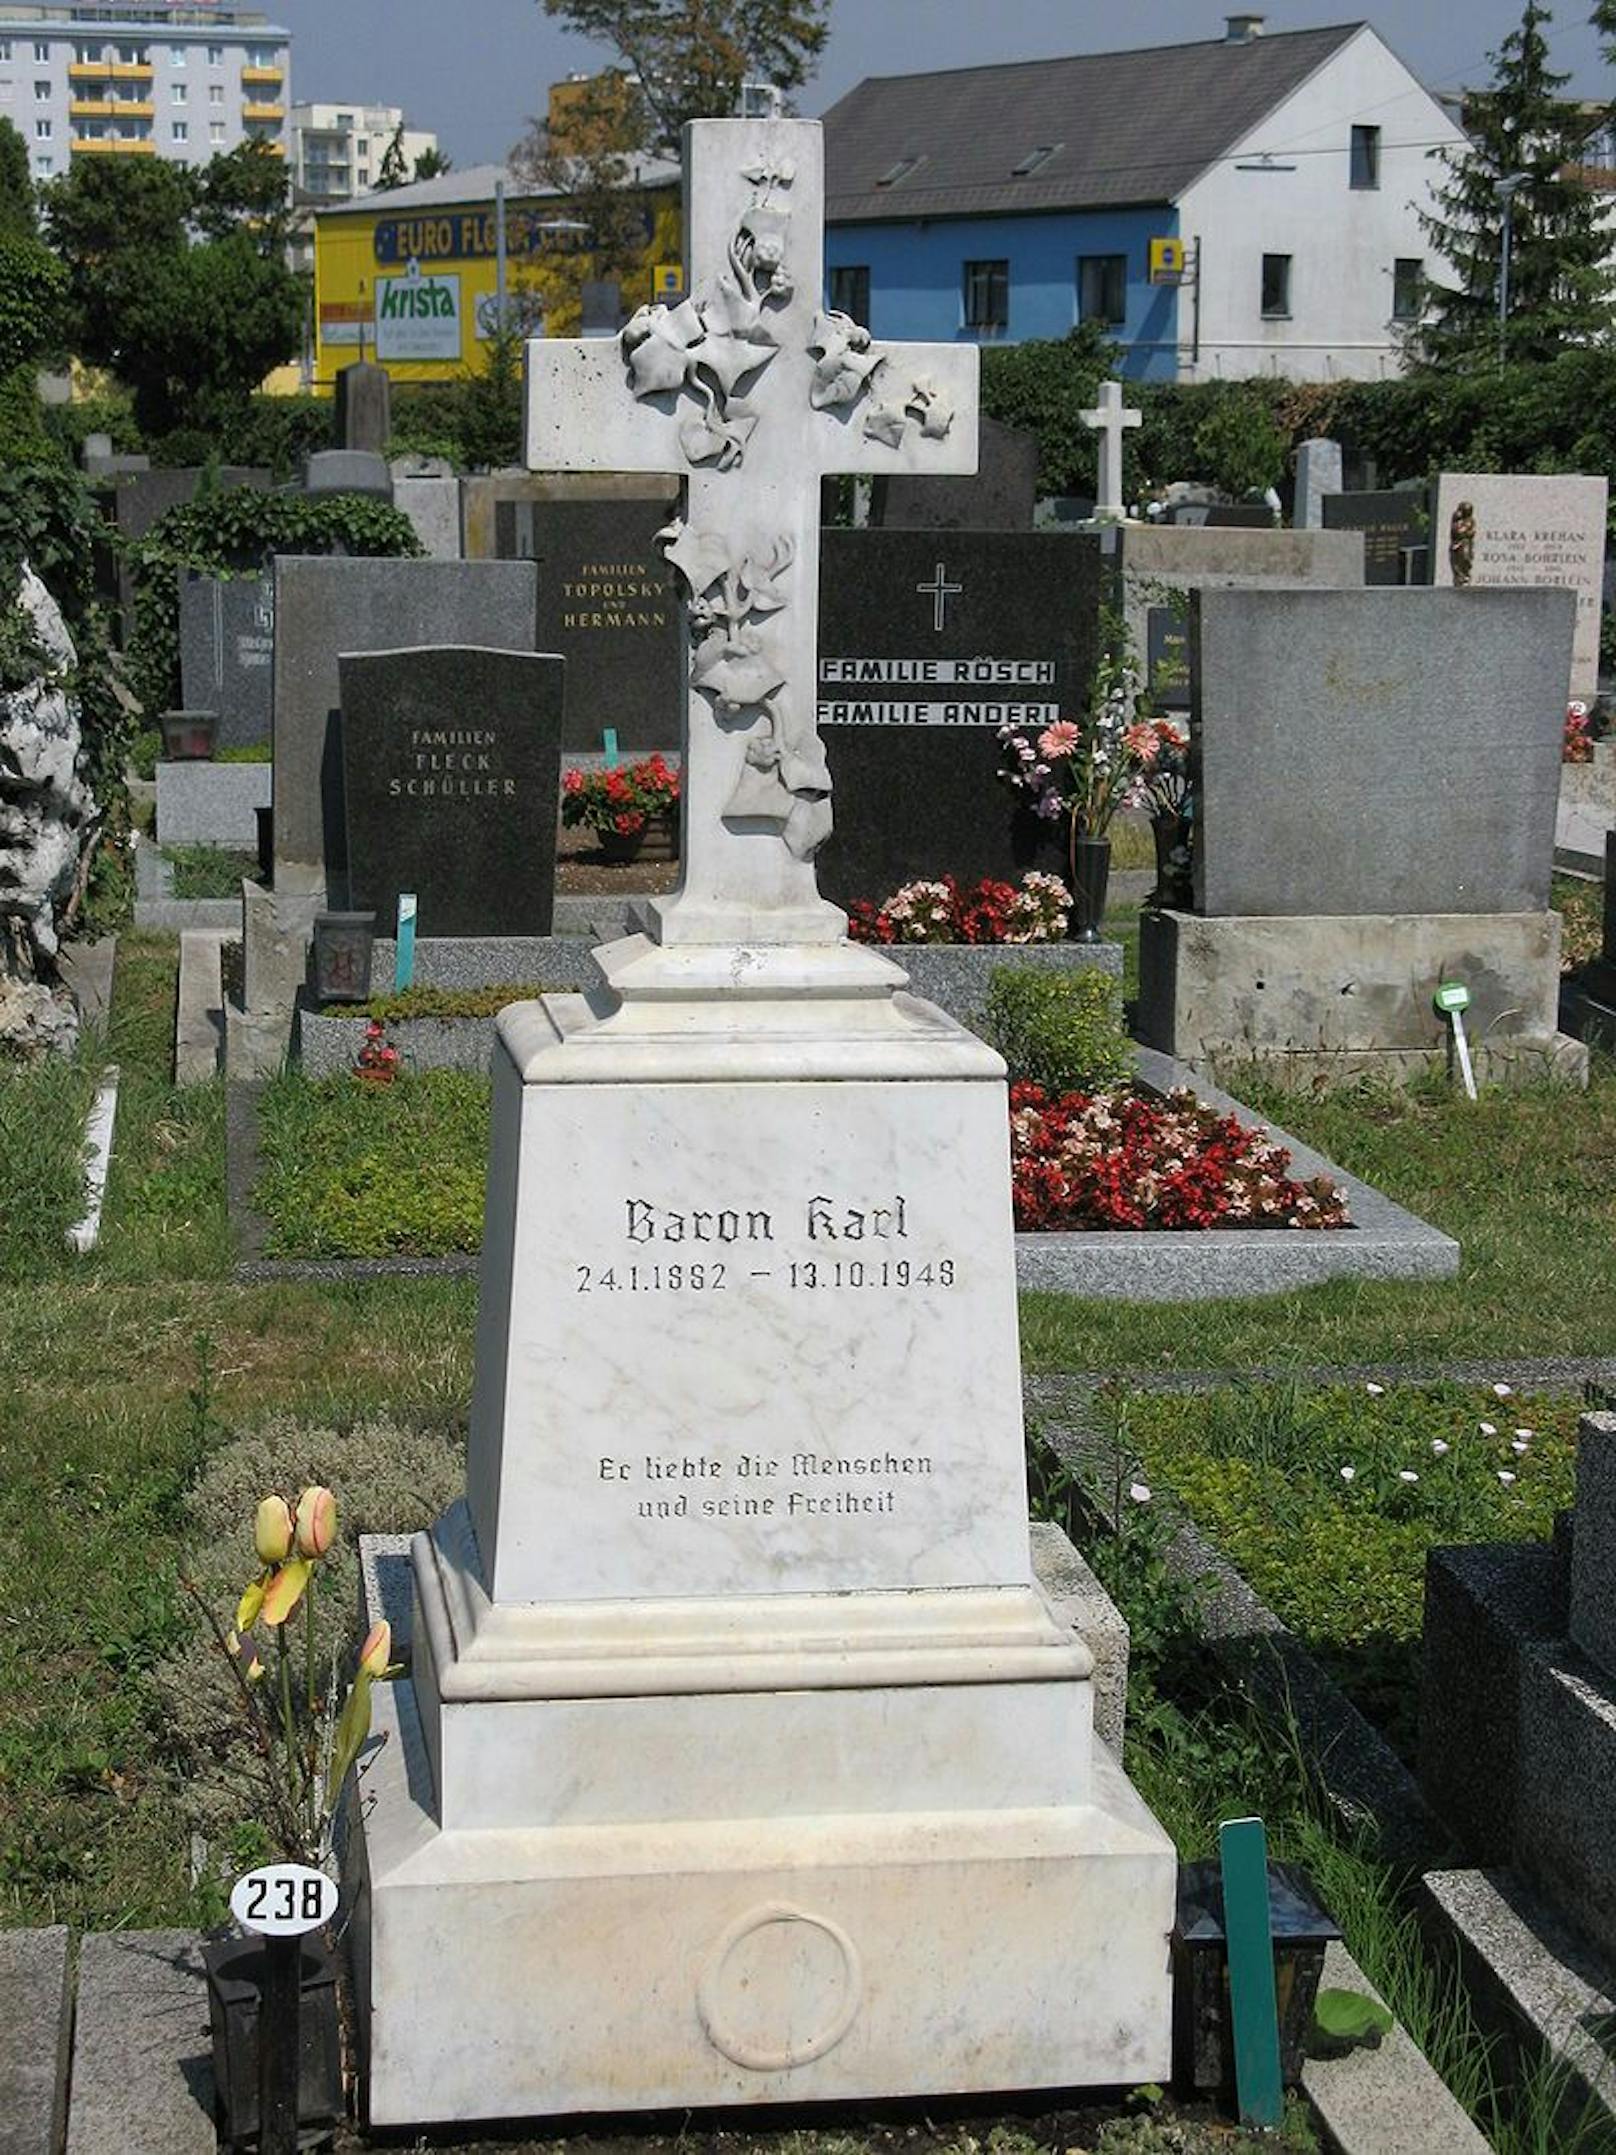 Karl Baron liegt am Zentralfriedhof begraben. In Favoriten erinnert die&nbsp;"Baron Karl Gasse“ an ihn.